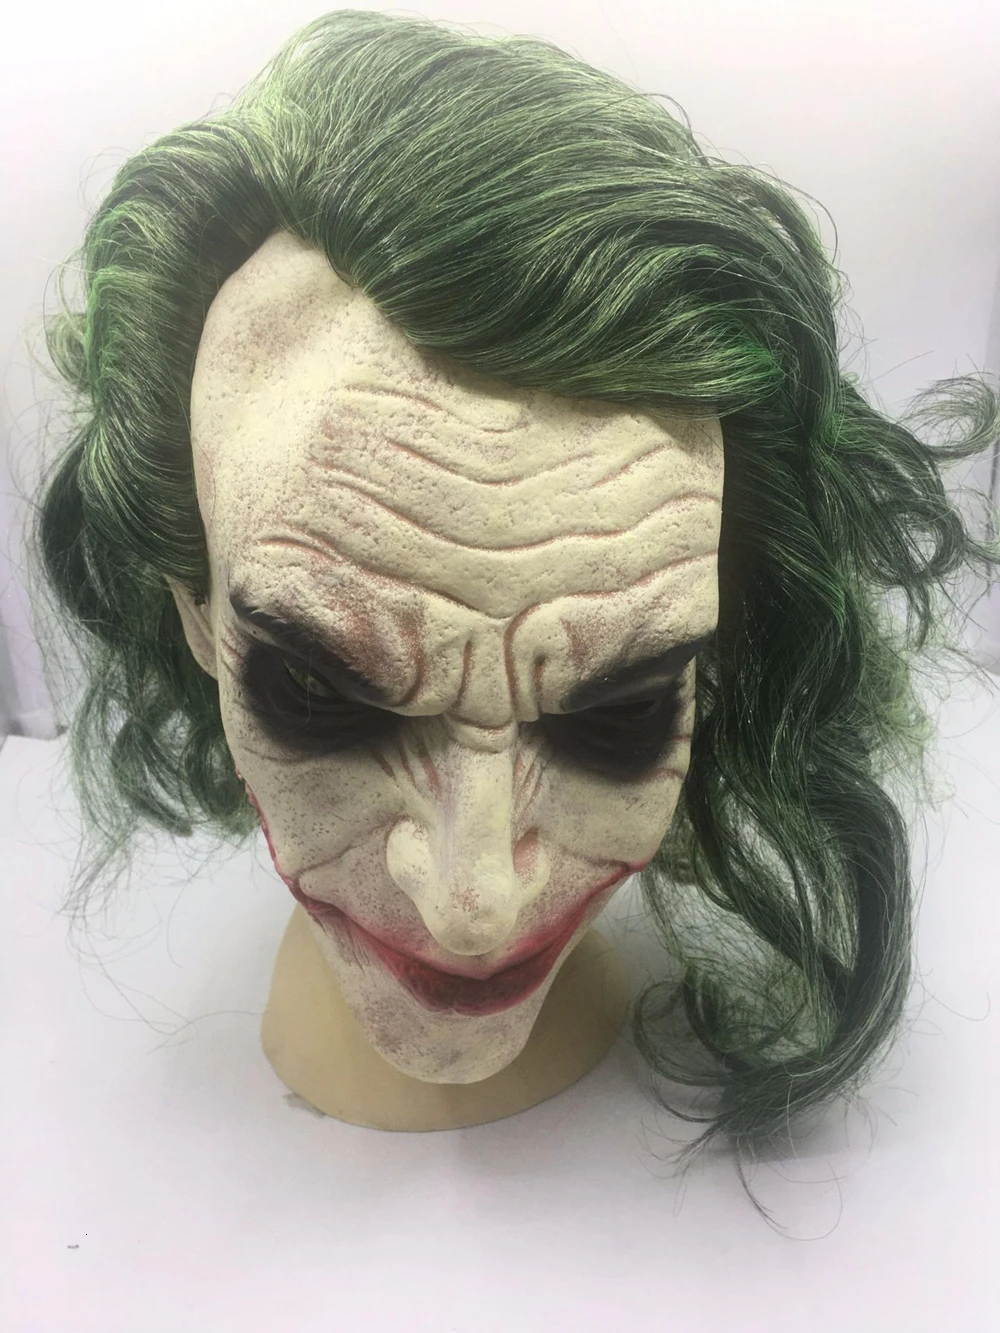 Латексная Маска Джокера из фильма Темный рыцарь Бэтмен Джокер Косплей страшная маска клоуна с зелеными волосами парик для Хэллоуина Вечерние